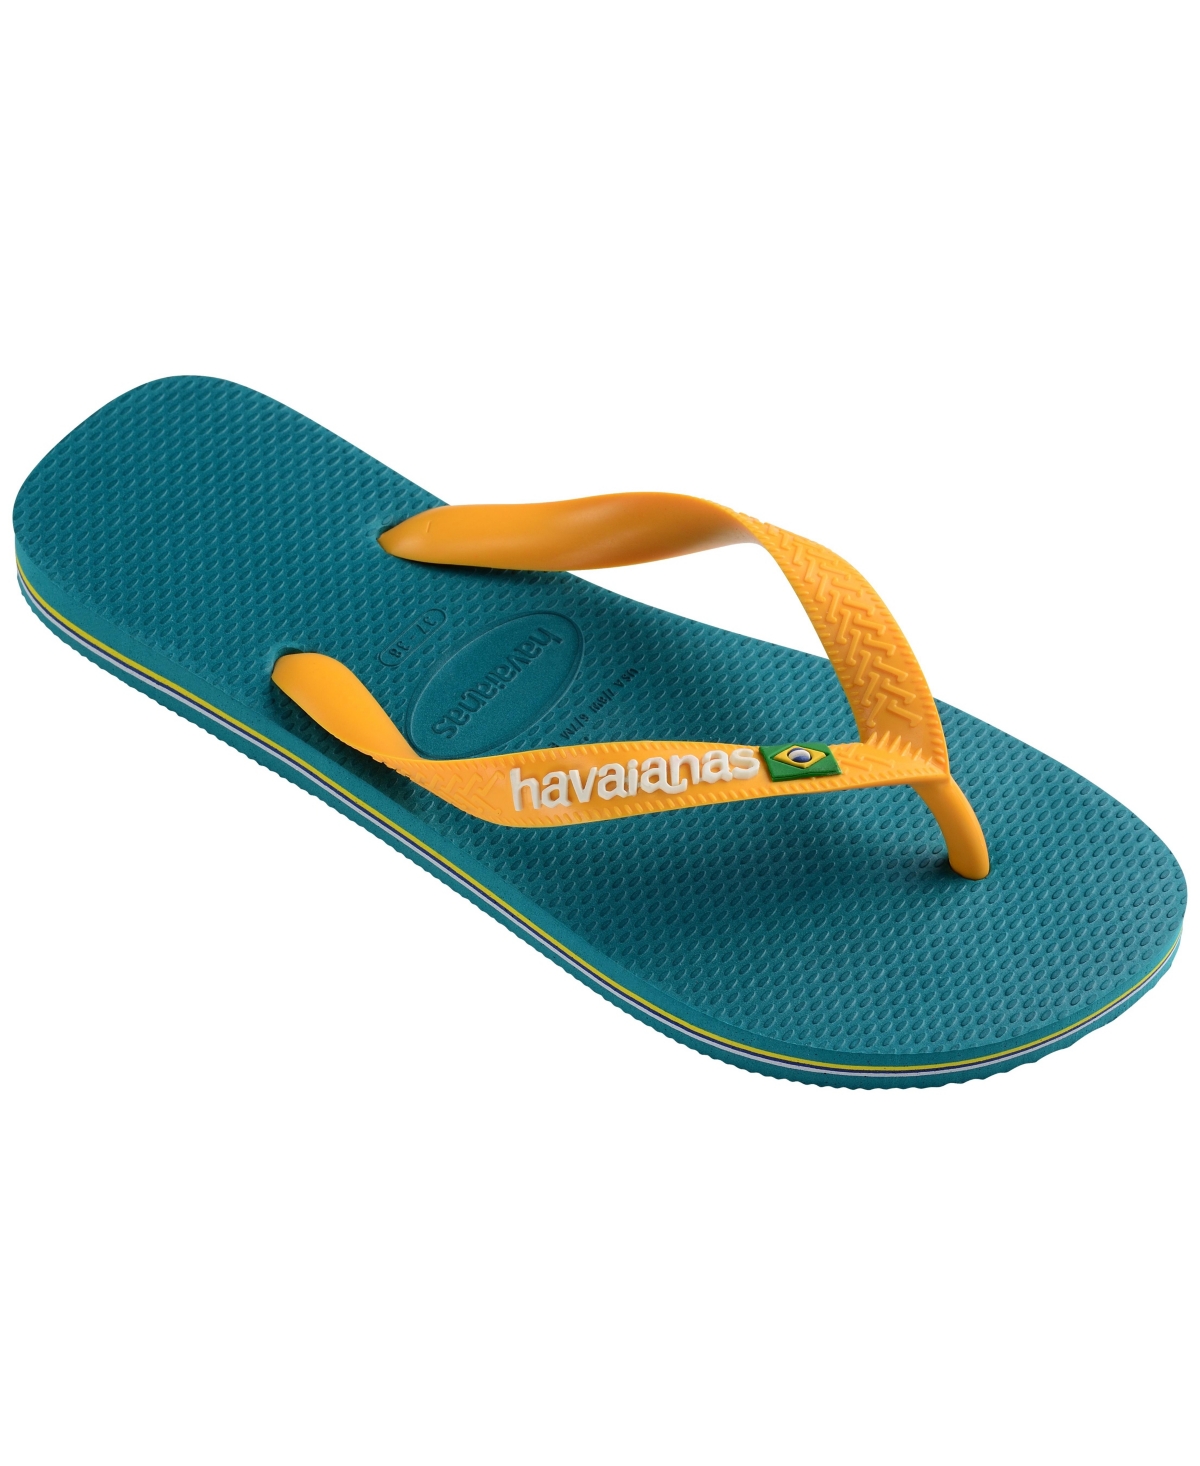 Havaianas Men's Brazil Logo Flip-Flop Sandals Men's Shoes